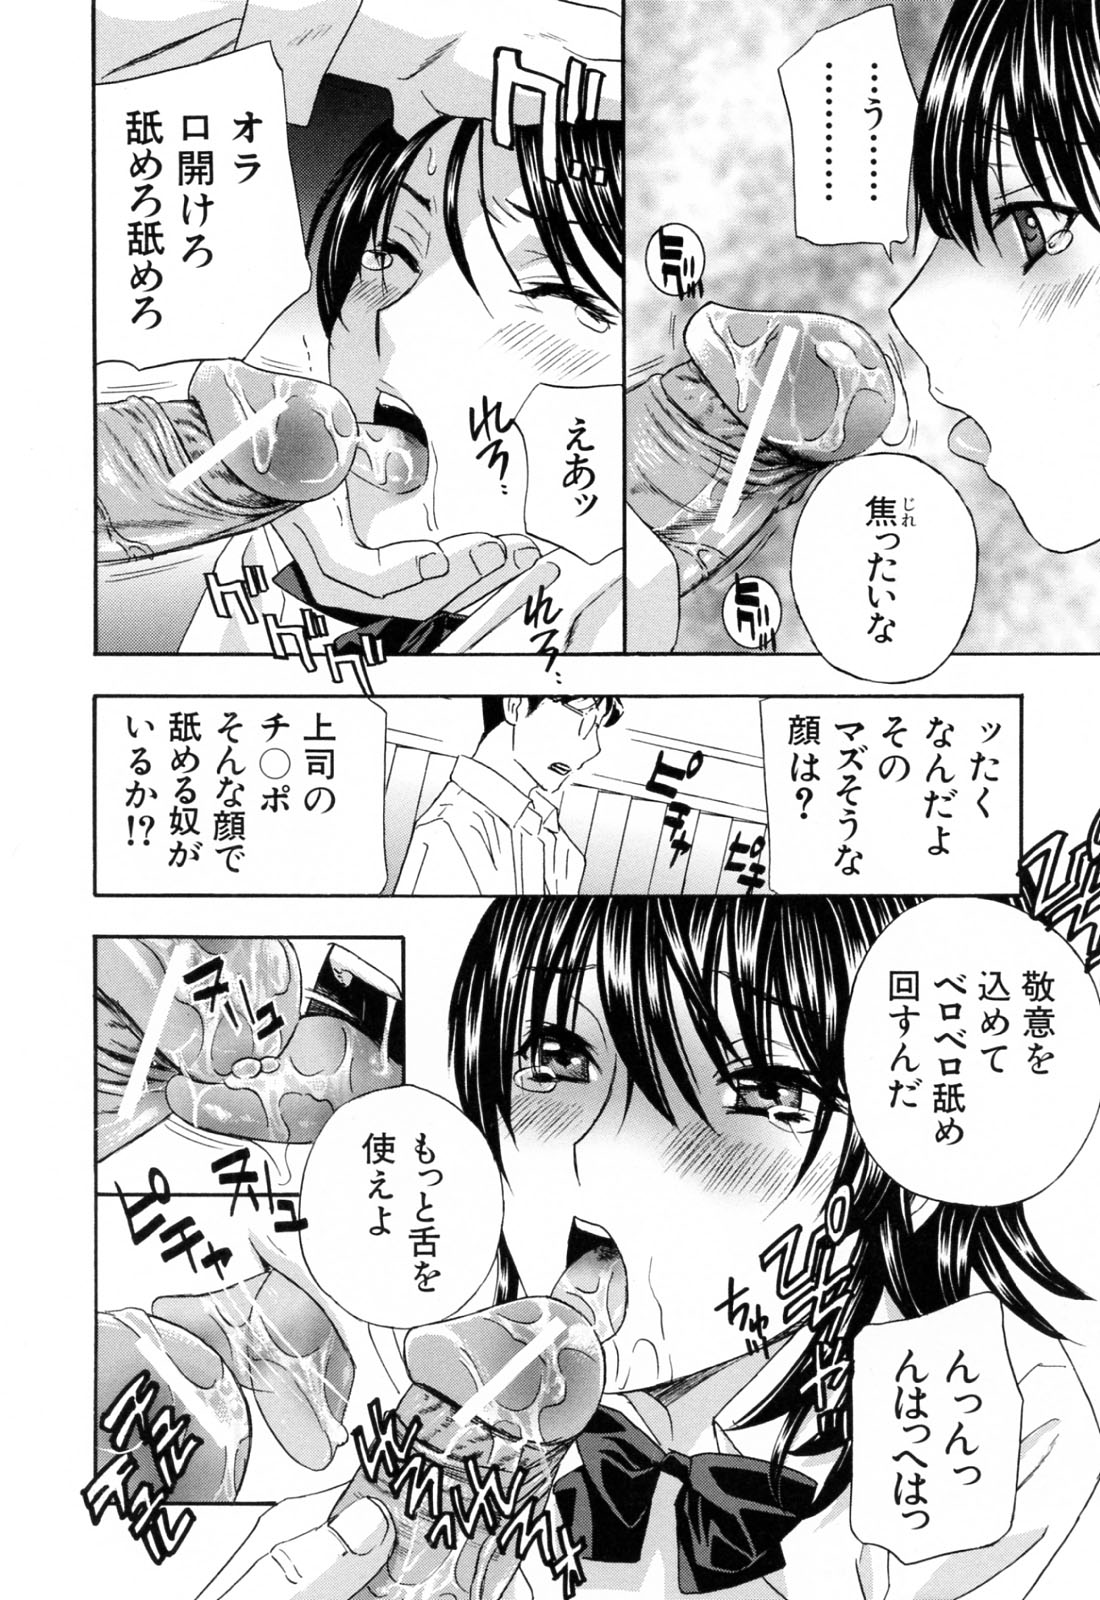 [Drill Murata] Aegu！Nureru！ [ドリルムラタ] あえぐ！濡れる！ [09-10-16]